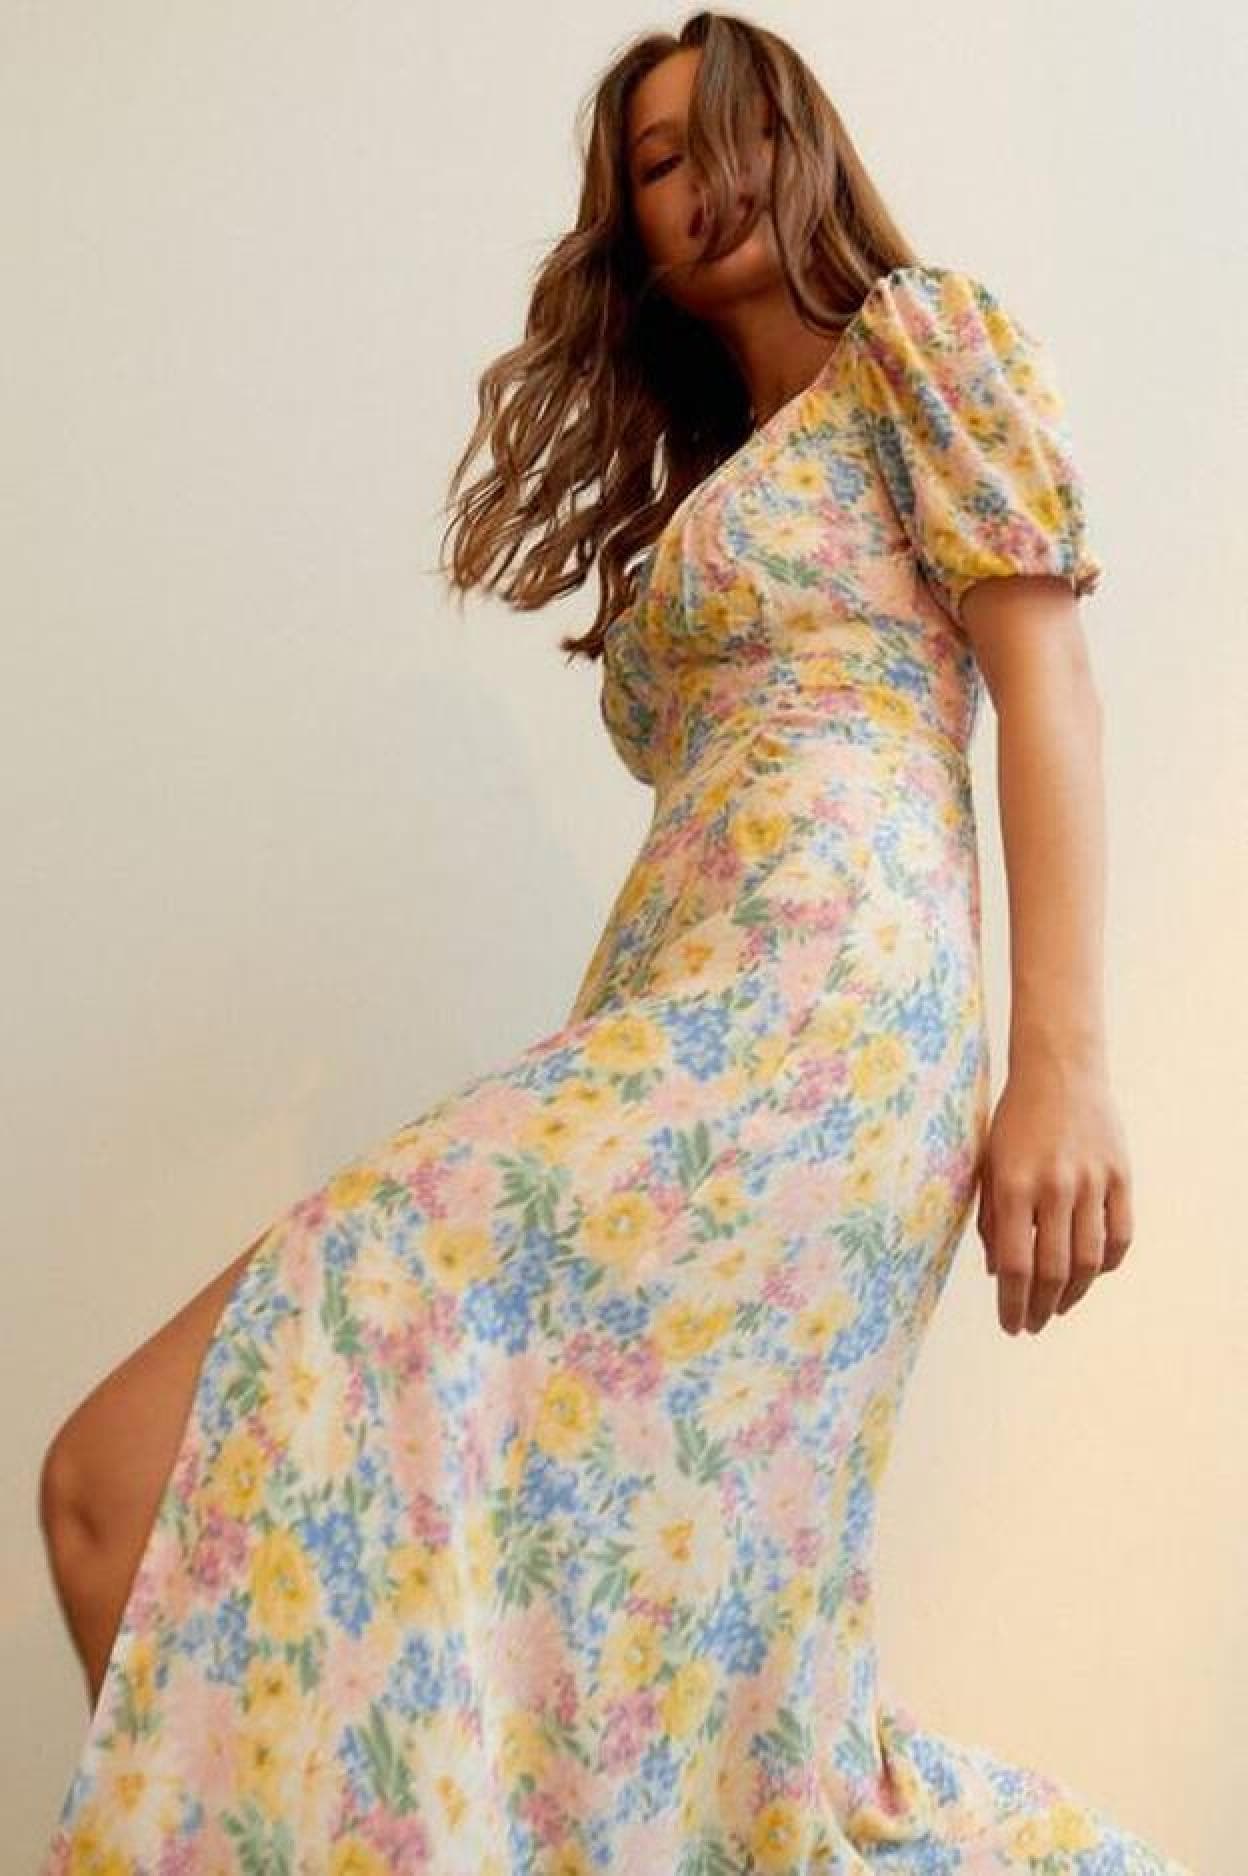 Pincha en la imagen para descubrir los vestidos más primaverales y floridos del momento que están en la nueva colección de H&M./stradivarius